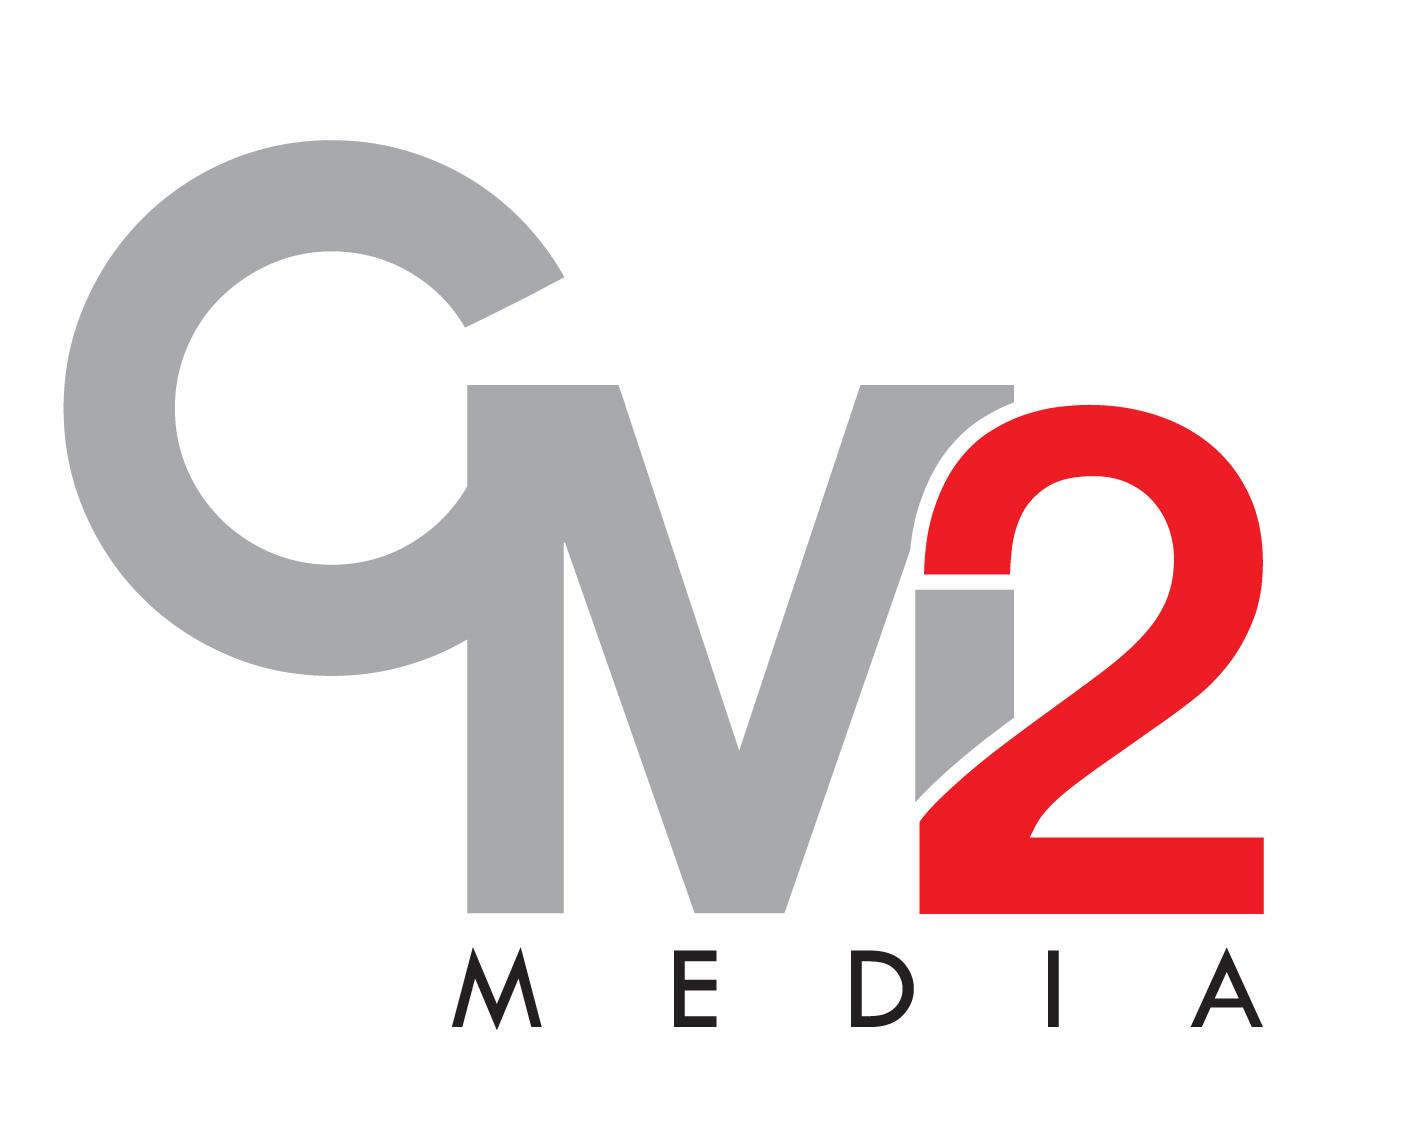 Cm2 Media